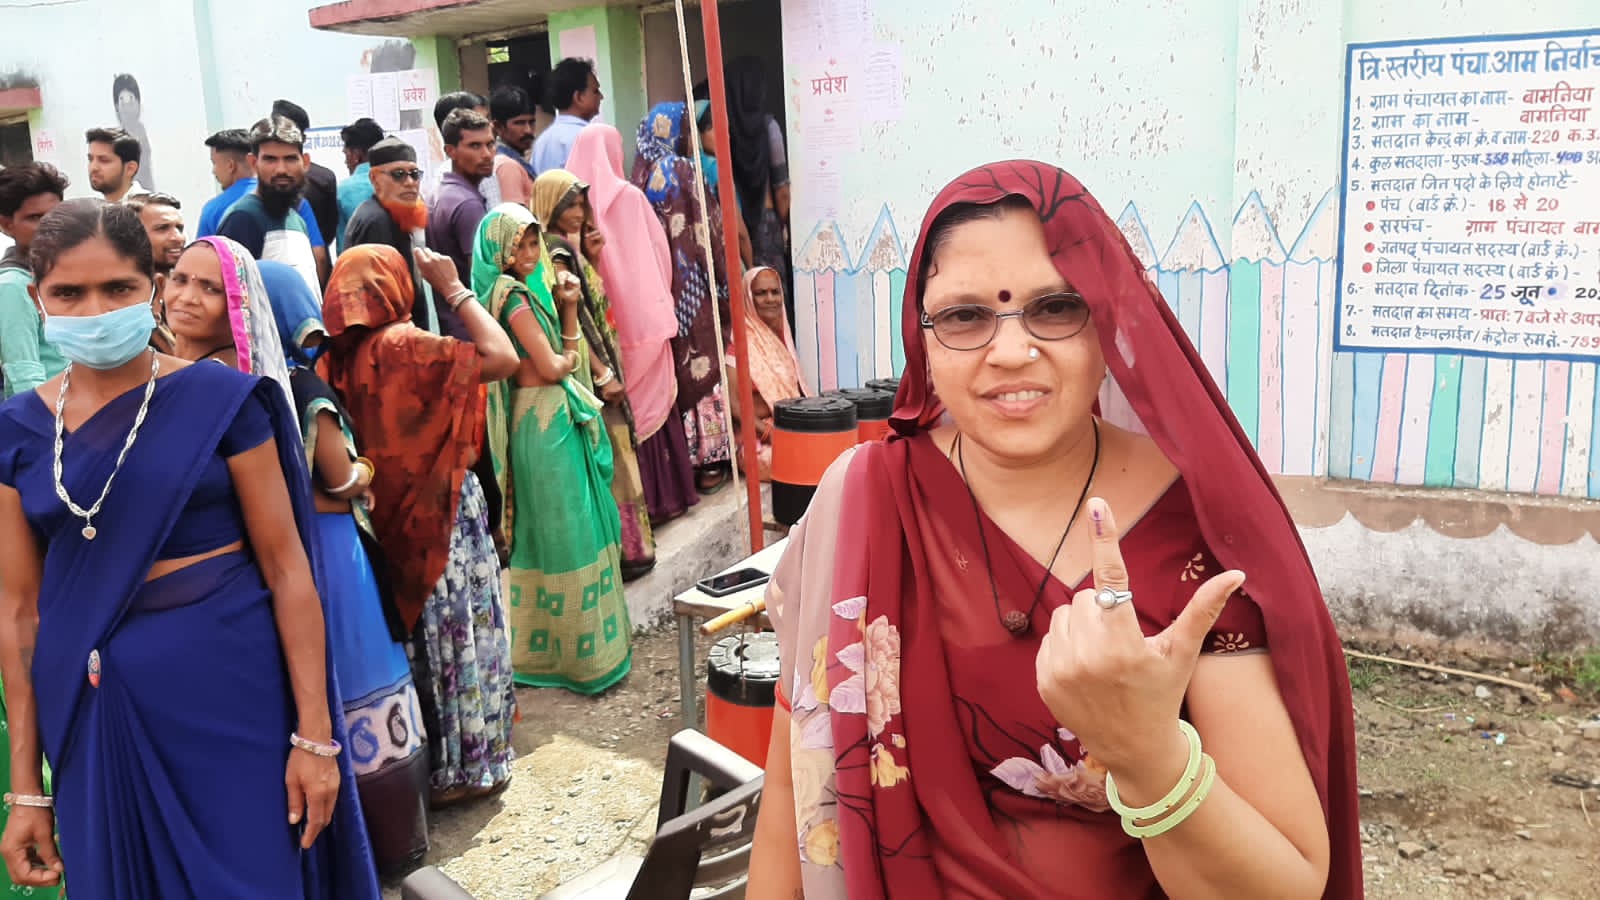 त्रिस्तरीय पंचायत चुनाव: कलेक्टर द्वारा पेटलावद एवं थांदला में मतदान केन्दों पर पहुंच कर स्वतंत्र, निष्पक्ष एवं शान्तिपूर्ण निर्वाचन के लिए निरिक्षण कर मतदाताओं को किया गया प्रोत्साहित | New India Times